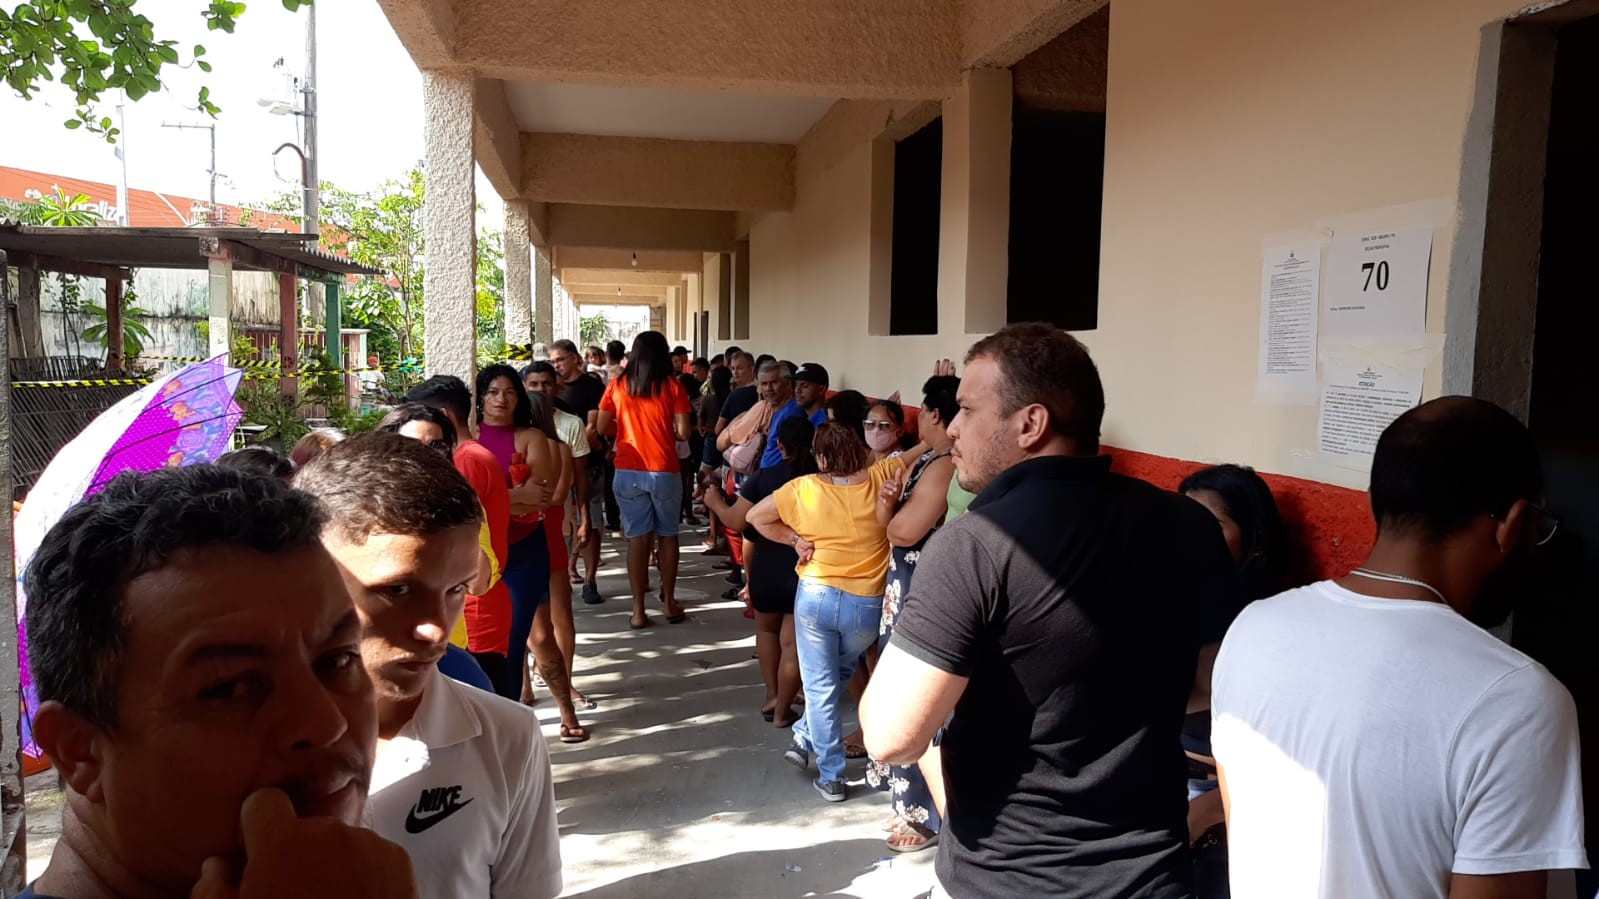 Eleitores reclamam de filas e sujeira com santinhos no Pará: 'desumano' e 'imundície', afirmam